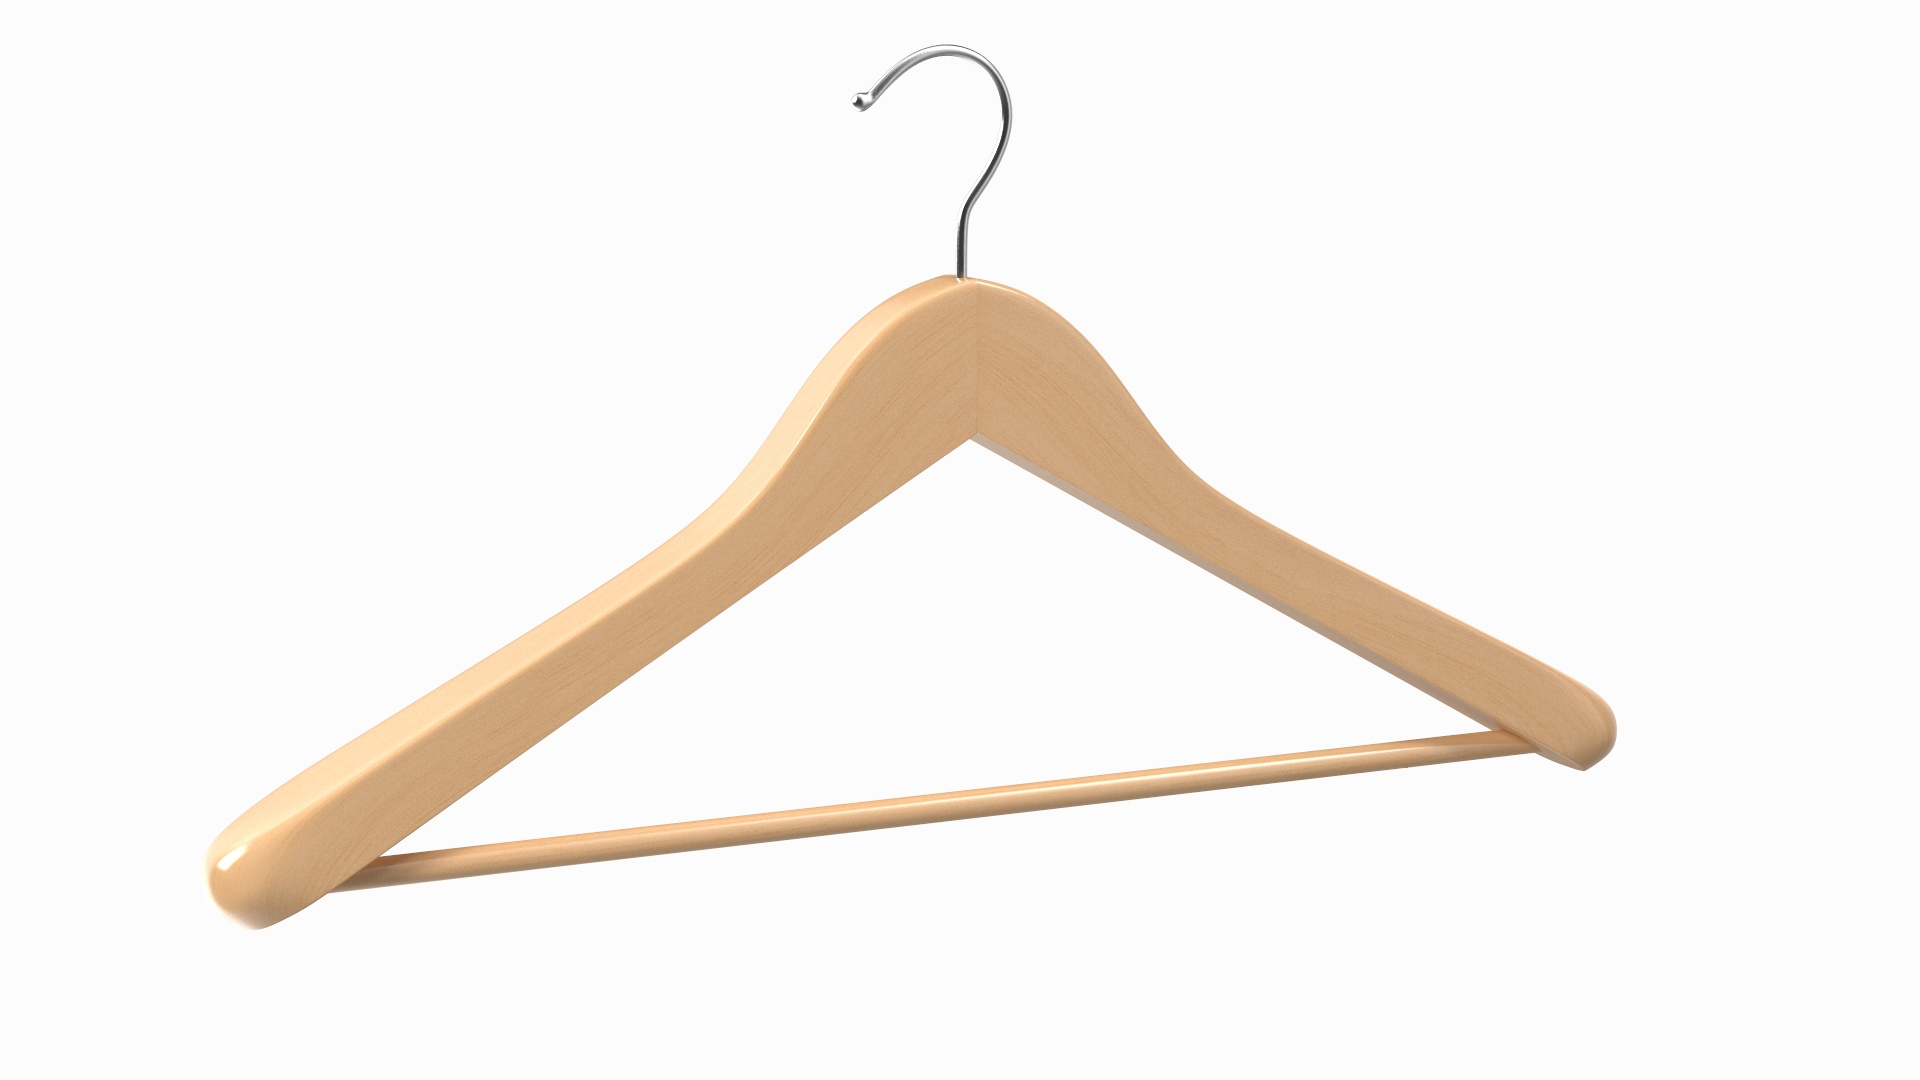 Wooden coat hanger For clothes Black 3D model